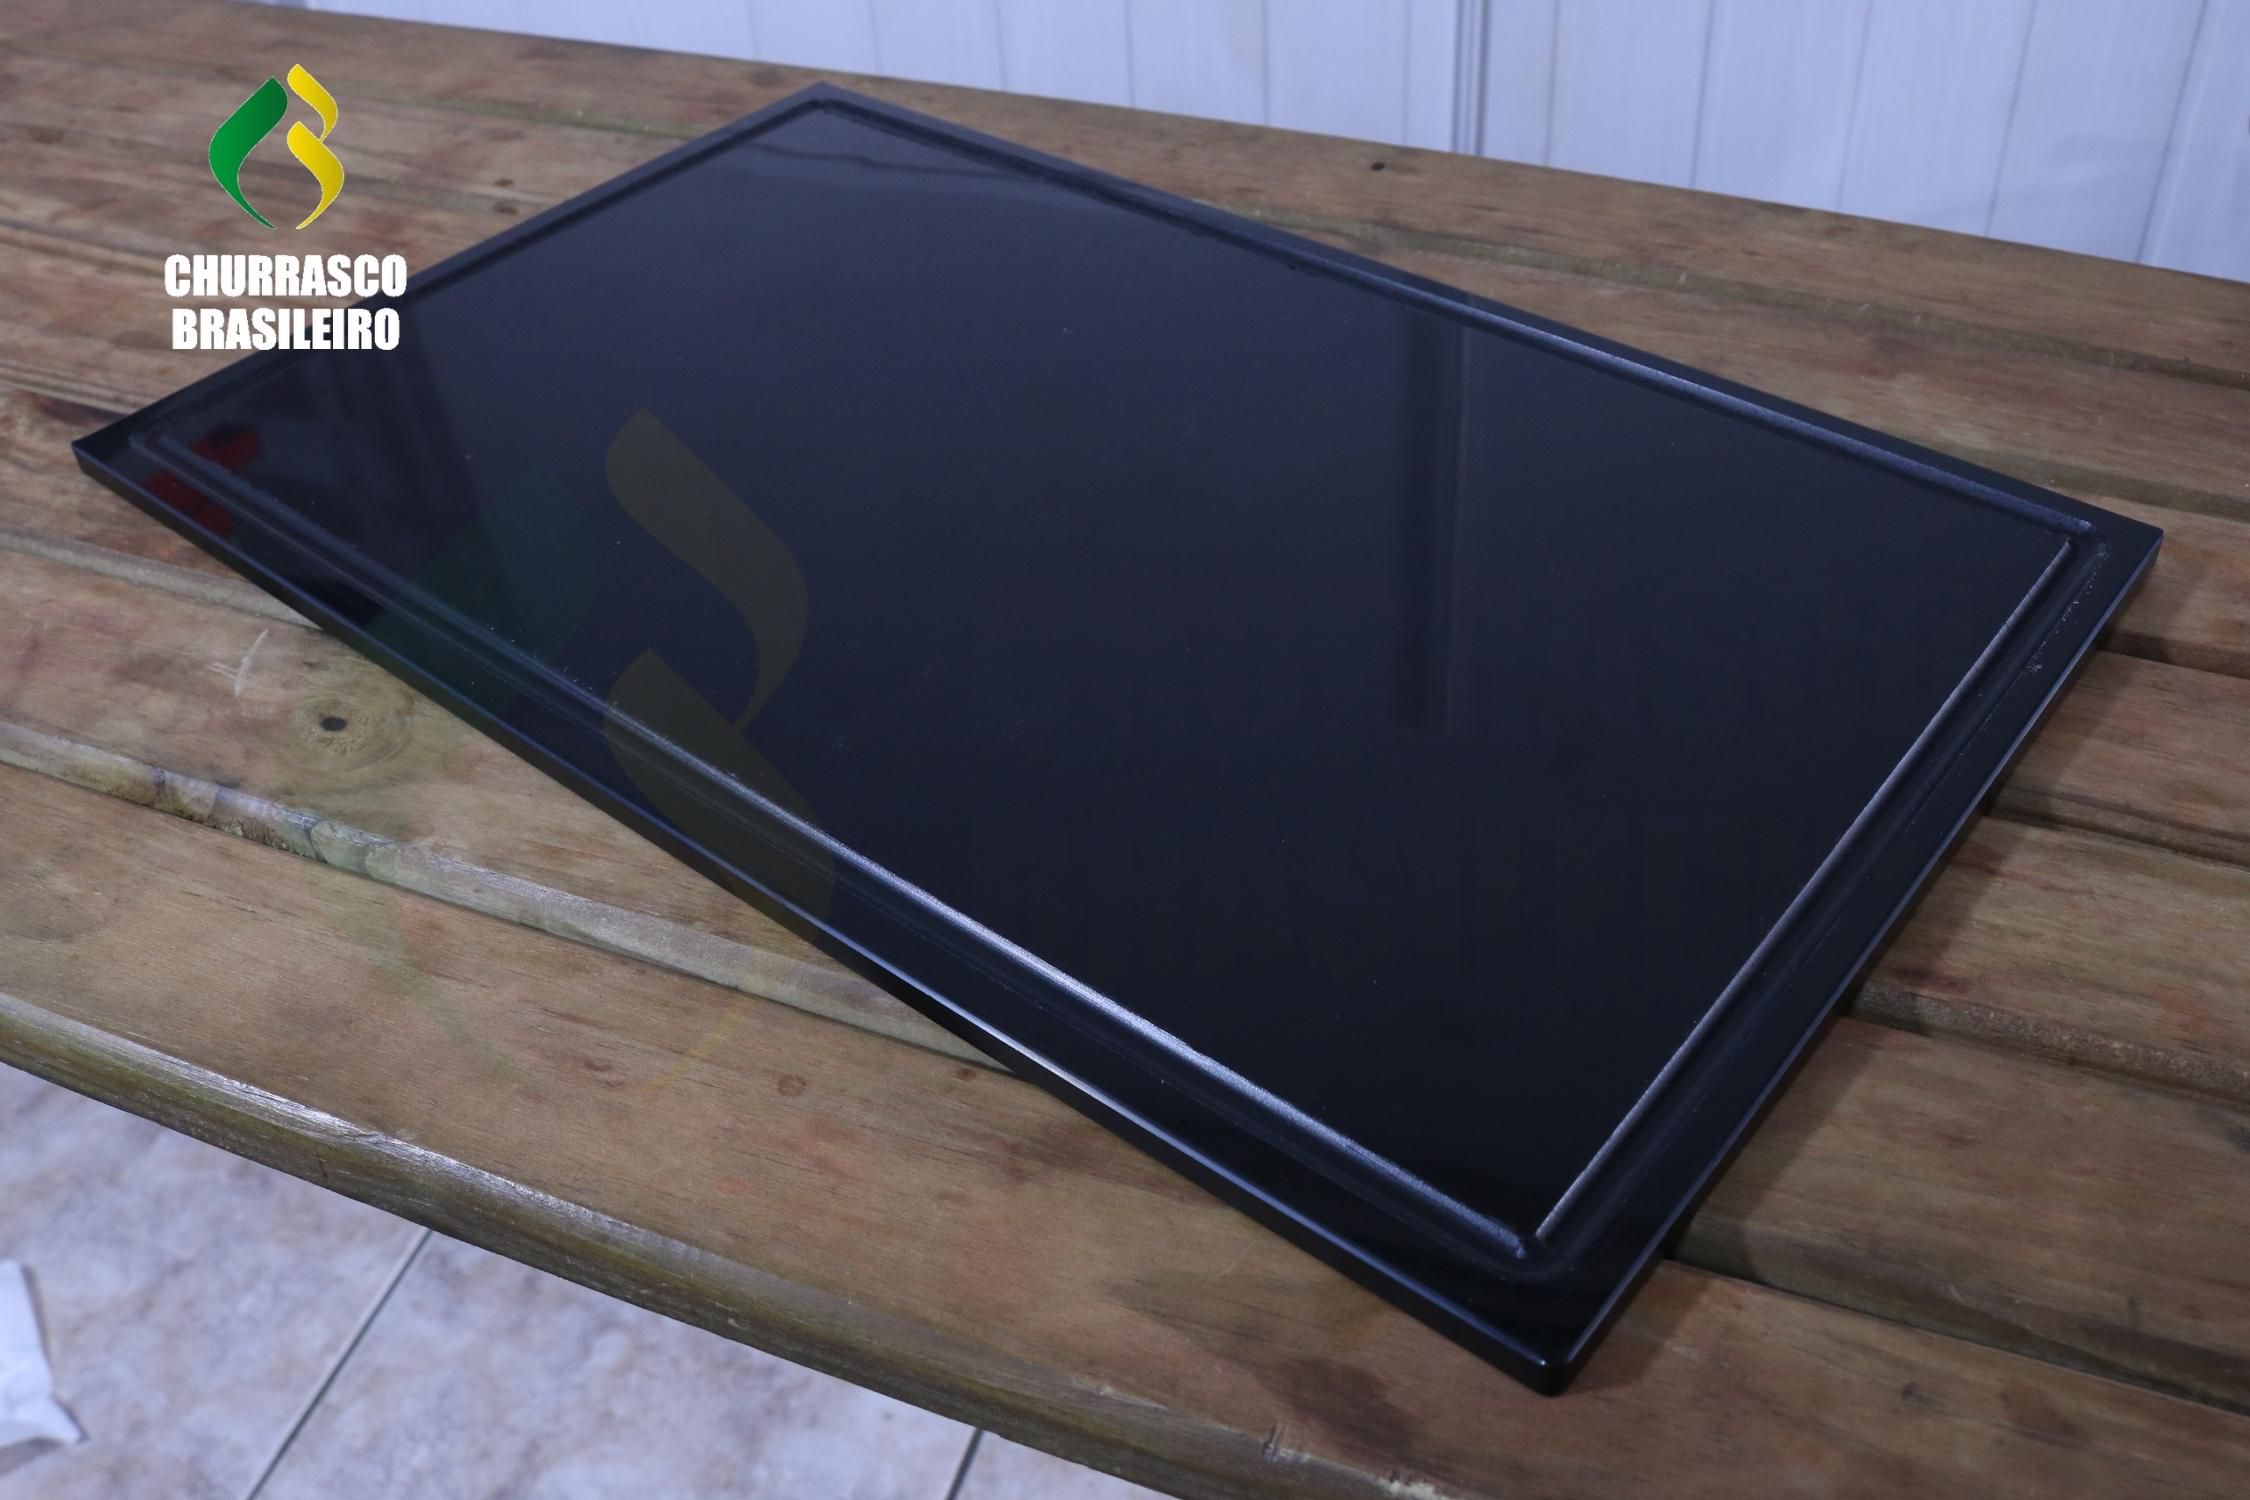 Tábua de corte de Polietileno Preta Black Piano com canaleta 50x30 -  Churrascobrasileiro - Churrasqueiras e acessórios para o seu churrasco